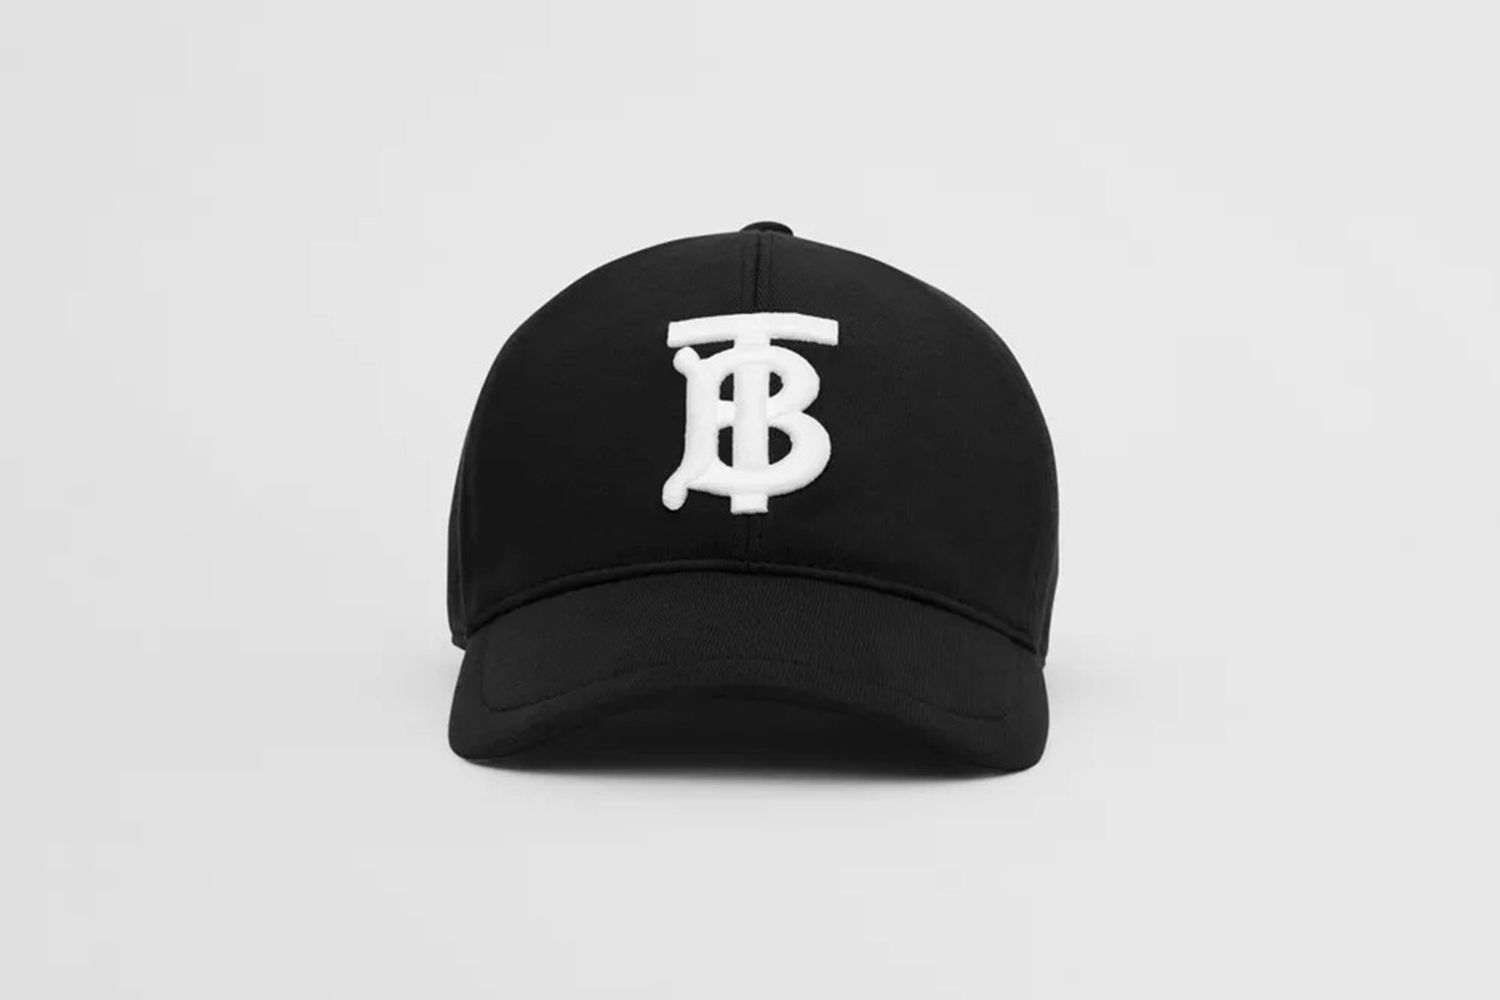 Monogram Motif Cotton Jersey Baseball Cap